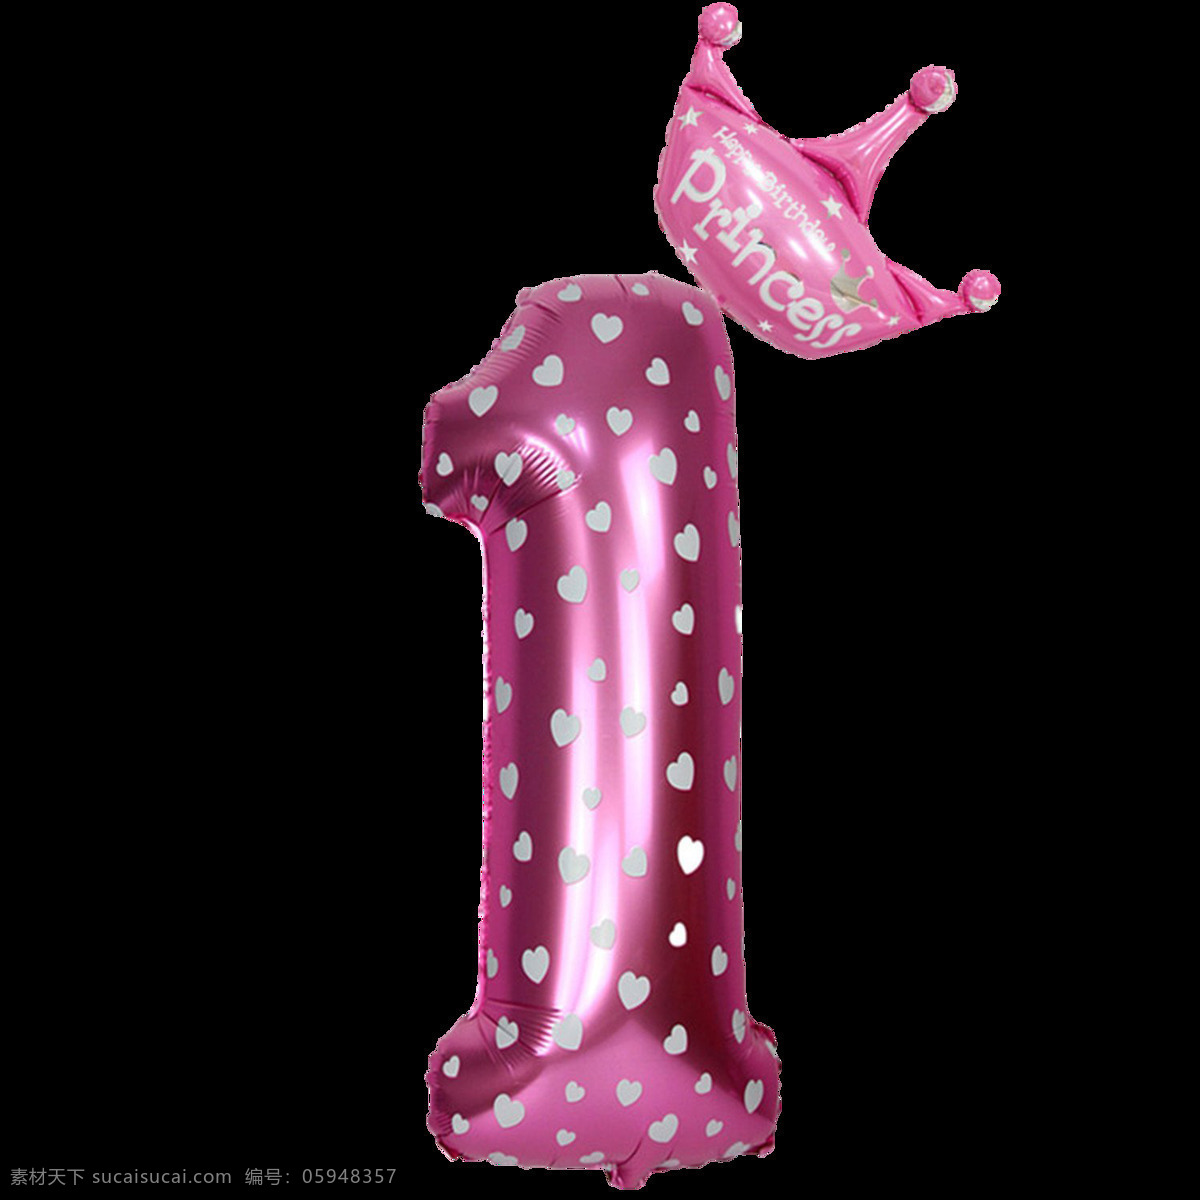 粉色气球字1 粉色气球字 王冠气球字 气球字 气球数字 铝膜气球字母 装饰字 派对气球 气球文字 字母气球 铝箔气球 3d设计 3d作品